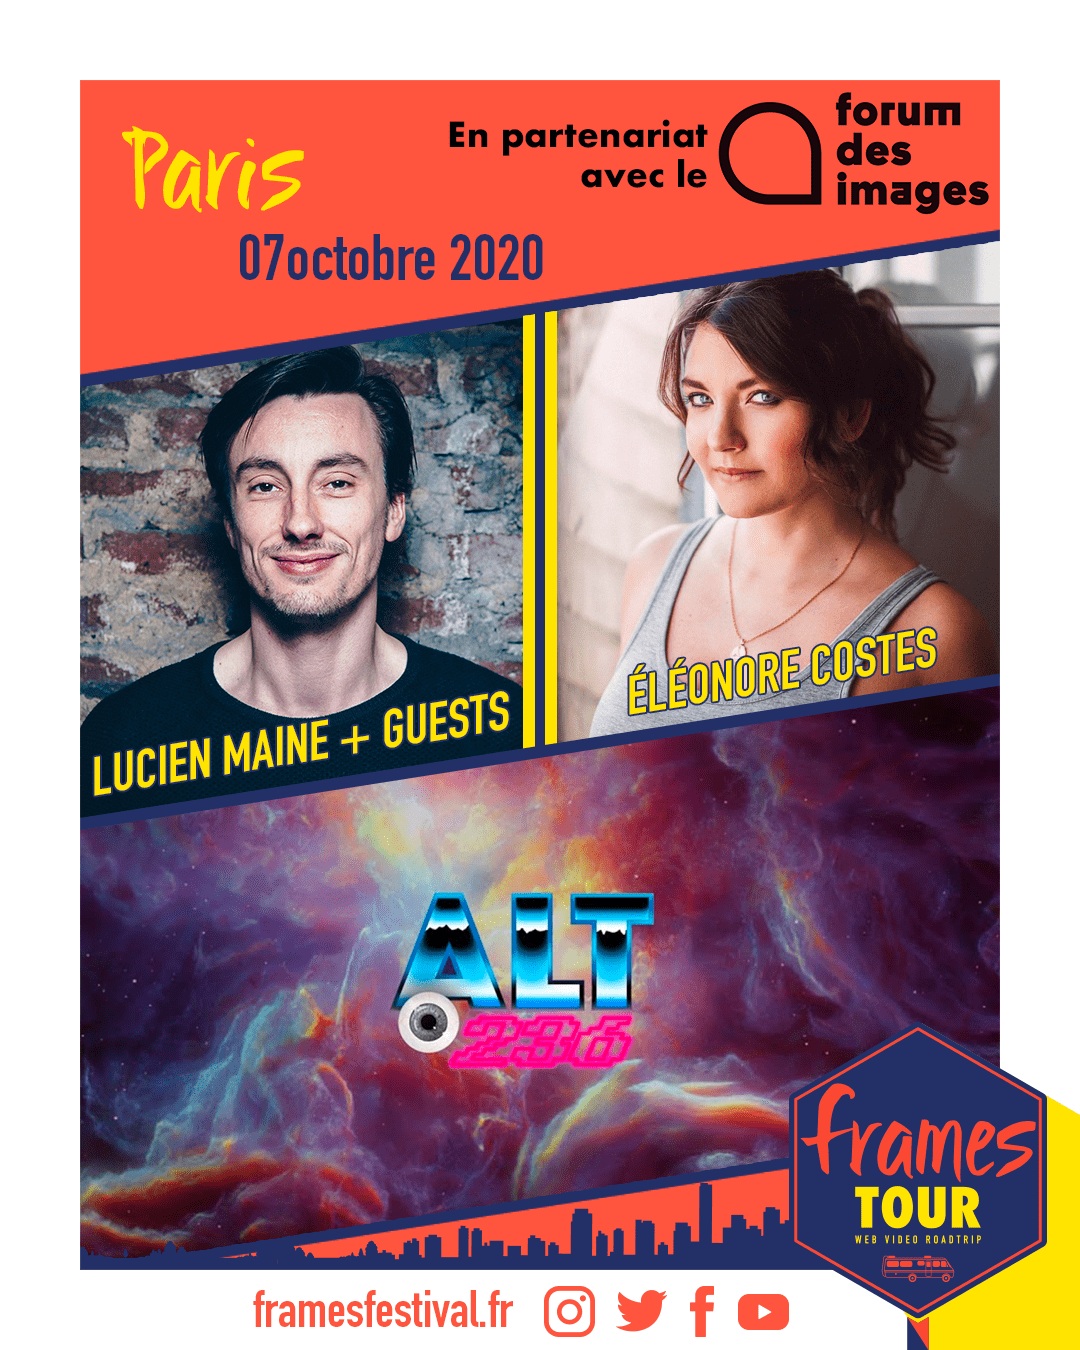 Frames 2020, programmation Paris avec les chaînes Youtube Lucien Maine, Eleonore Costes et ALT